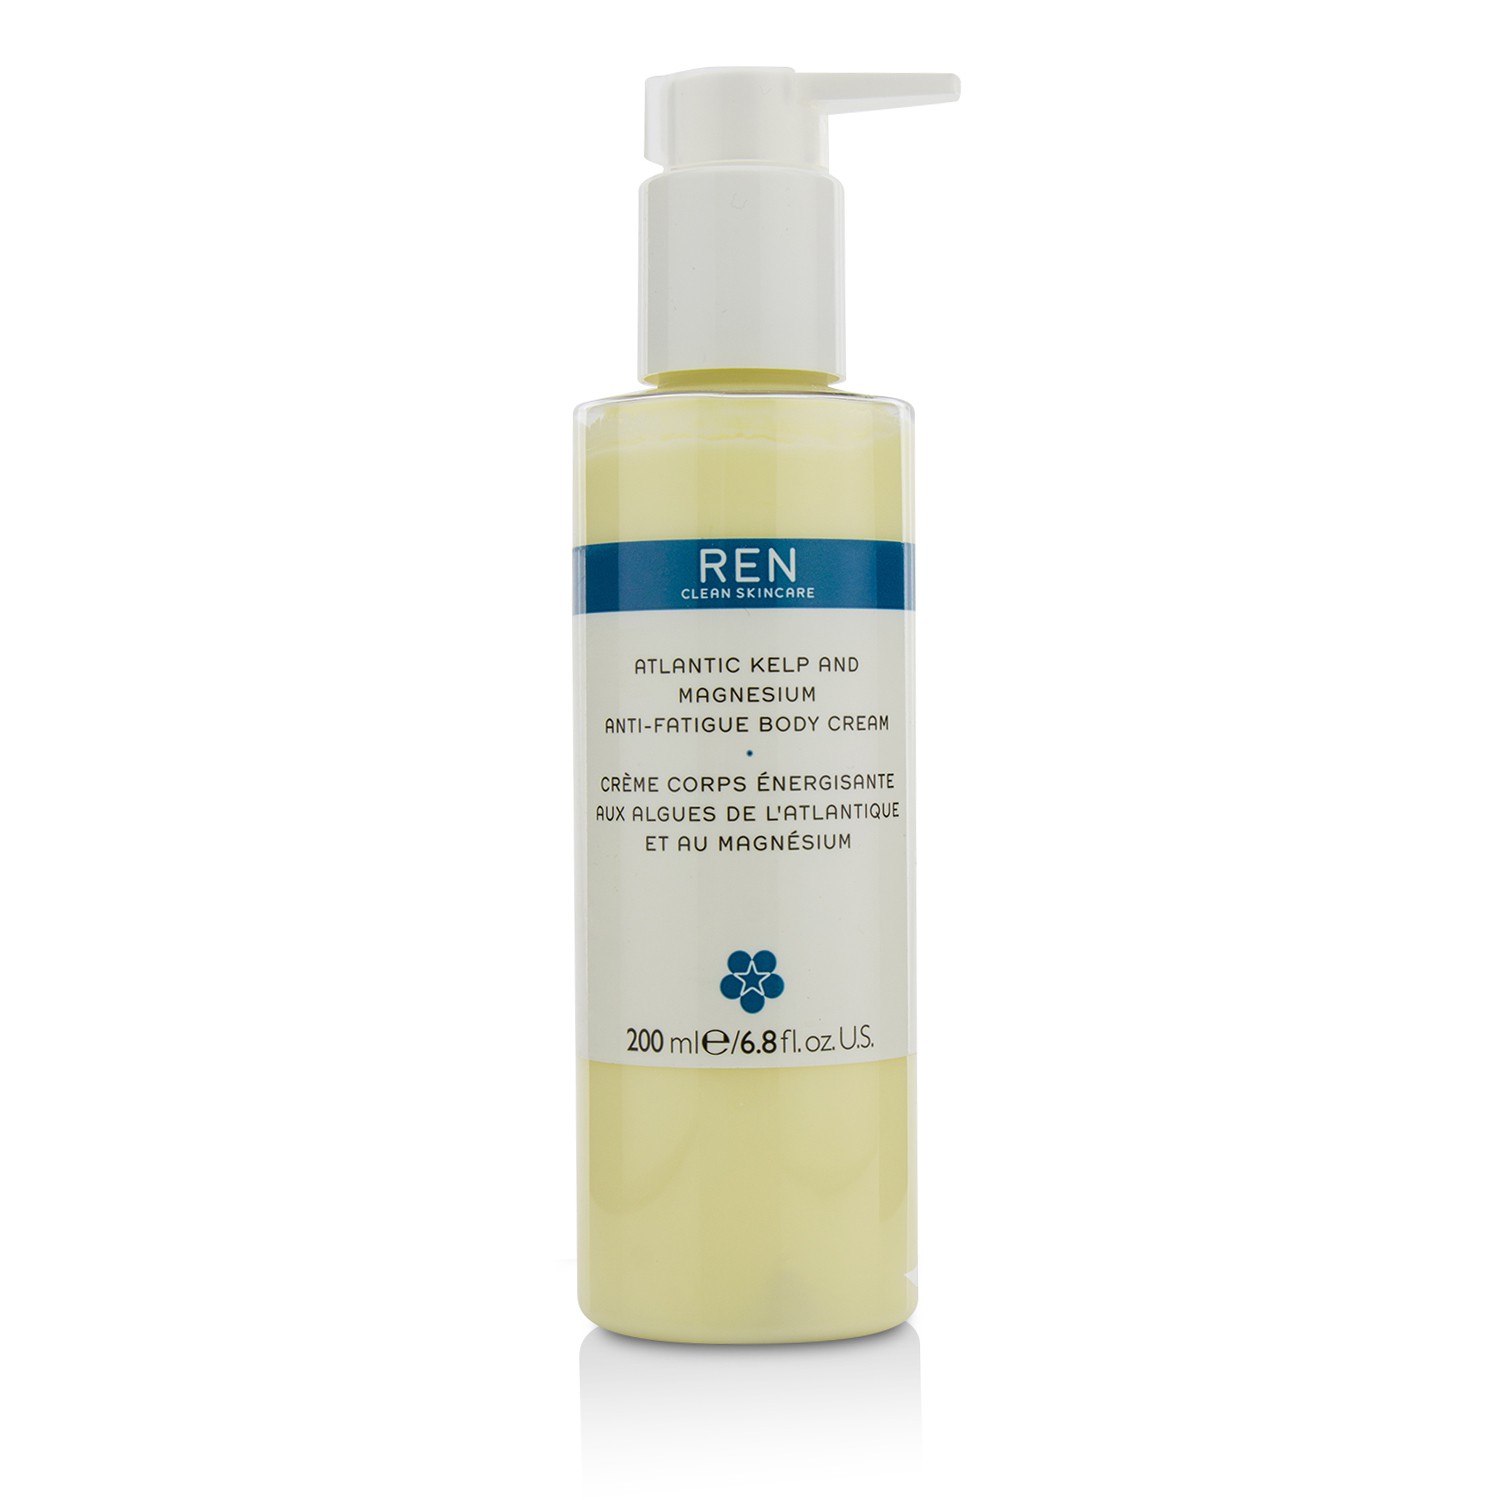 Atlantic Kelp And Magnesium Anti-Fatigue Body Cream Ren Image